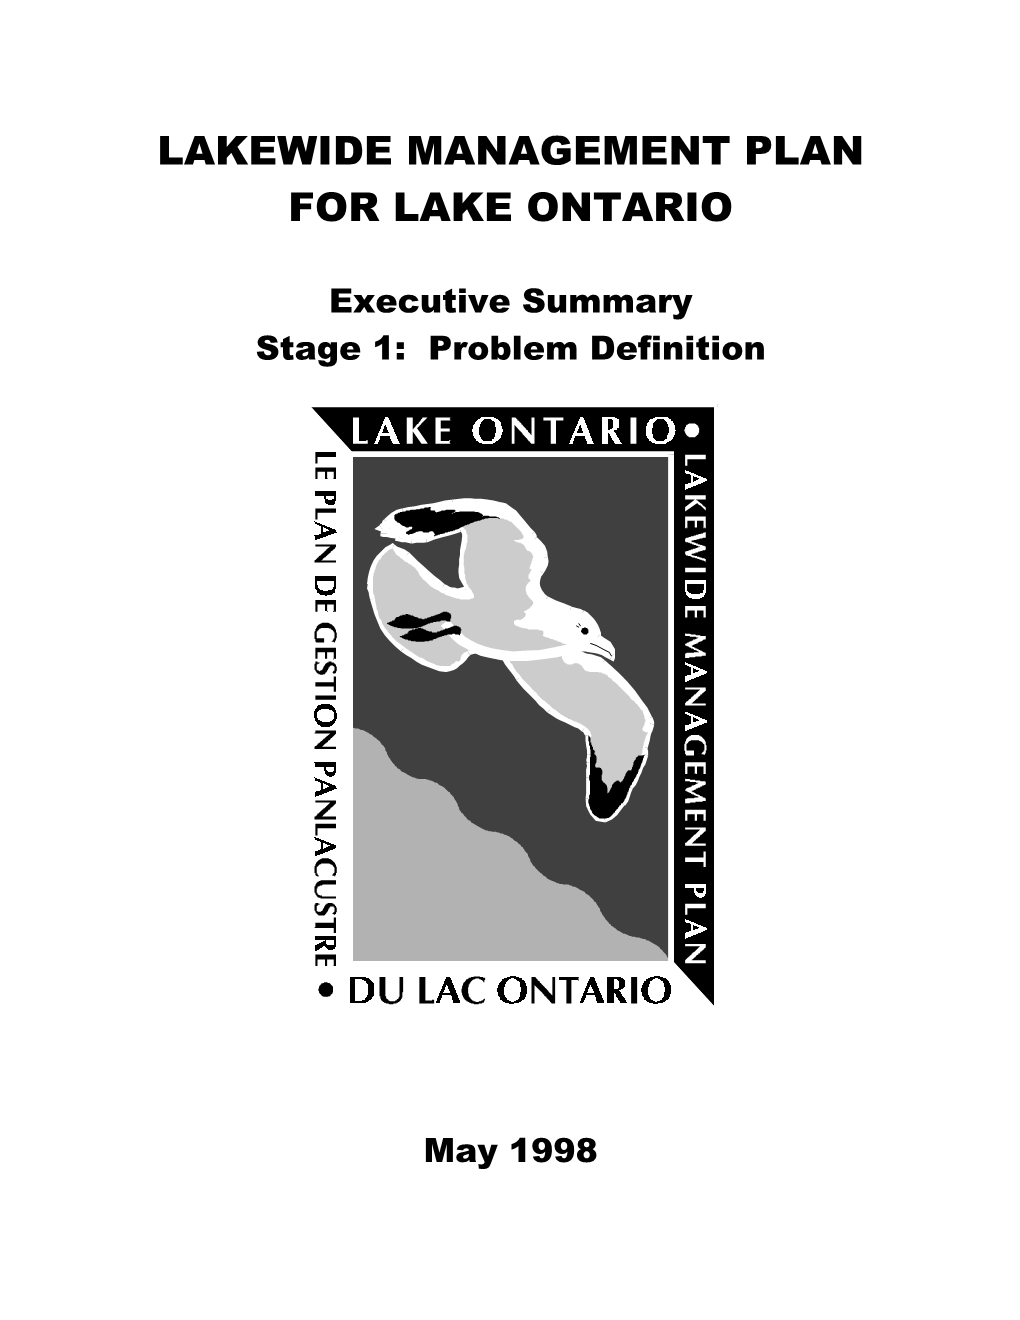 Lakewide Management Plan for Lake Ontario